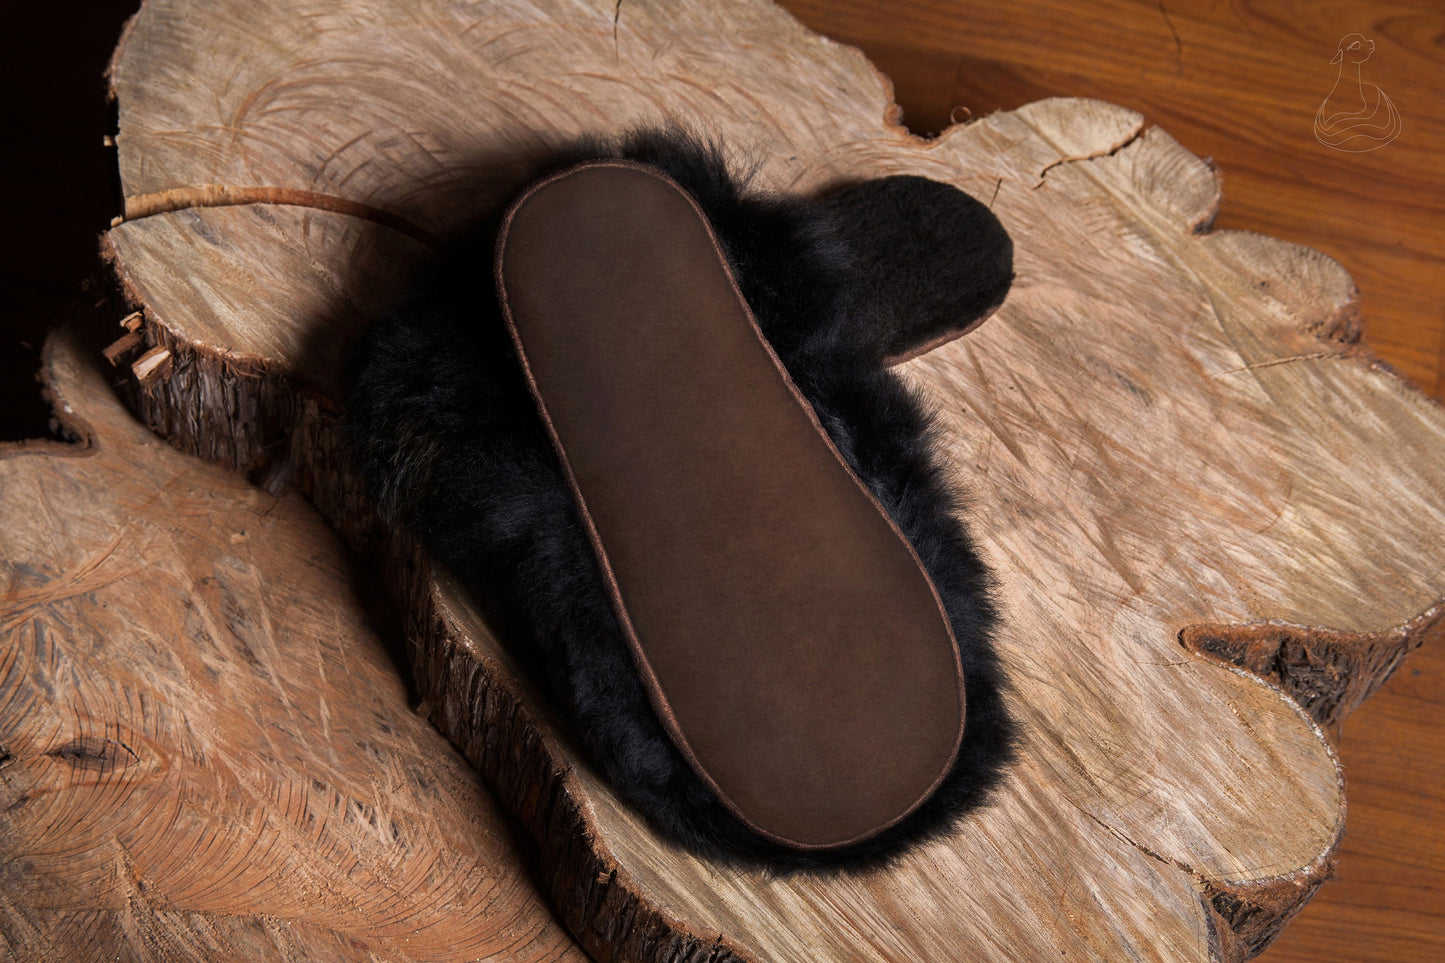 Baby Alpaca Fur Slippers | Black Slippers Alpaca Fur | Handmade Fur Slippers